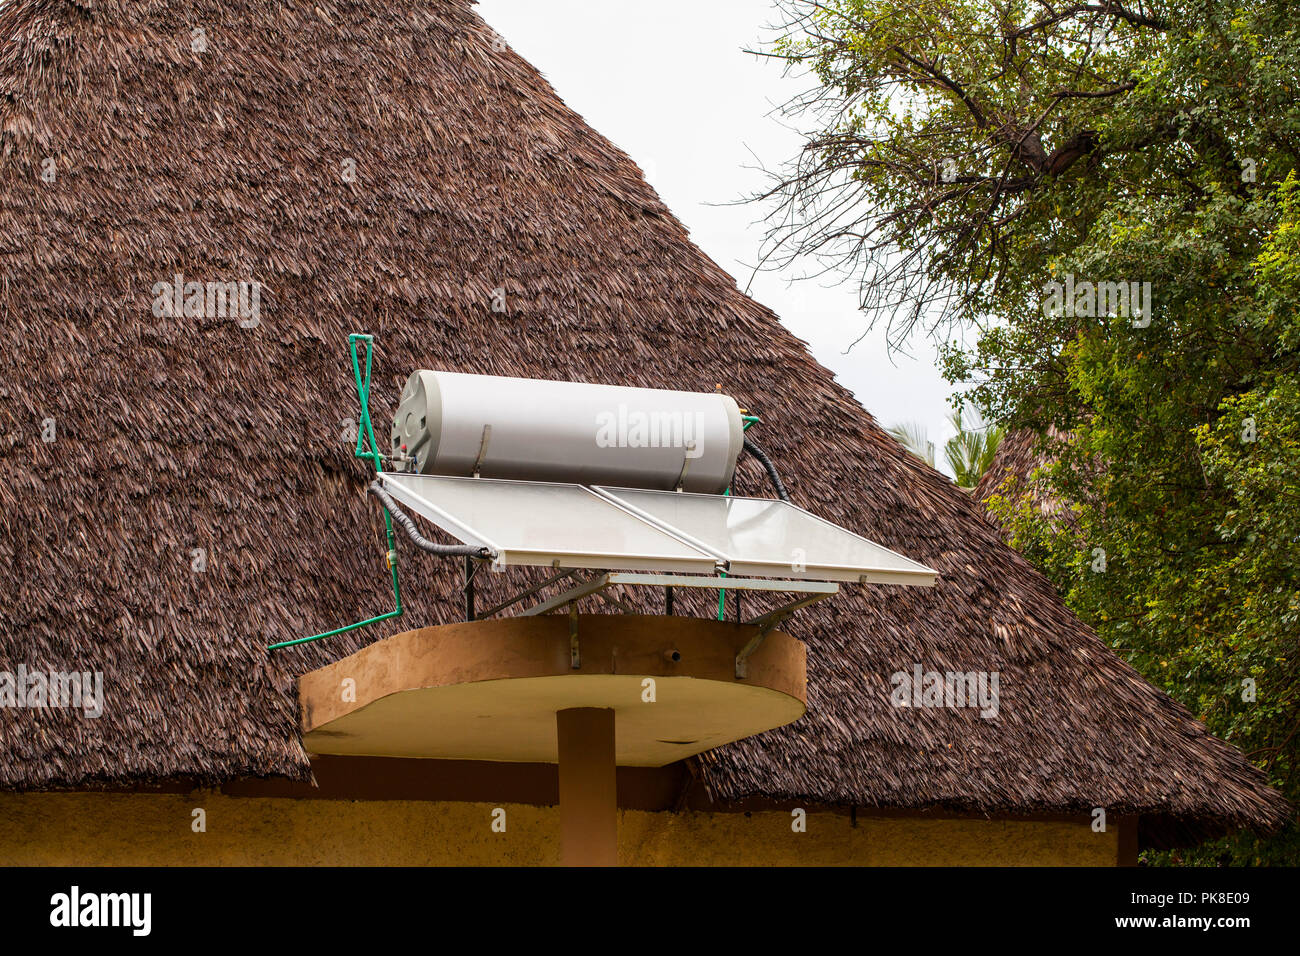 Systèmes pour le chauffage de l'eau à partir de la lumière solaire ( soleil collecteurs) sur les toits de l'hôtel au Kenya Banque D'Images